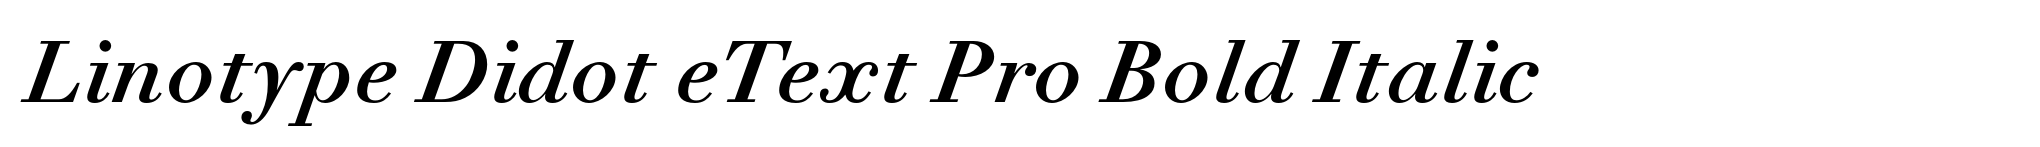 Linotype Didot eText Pro Bold Italic image